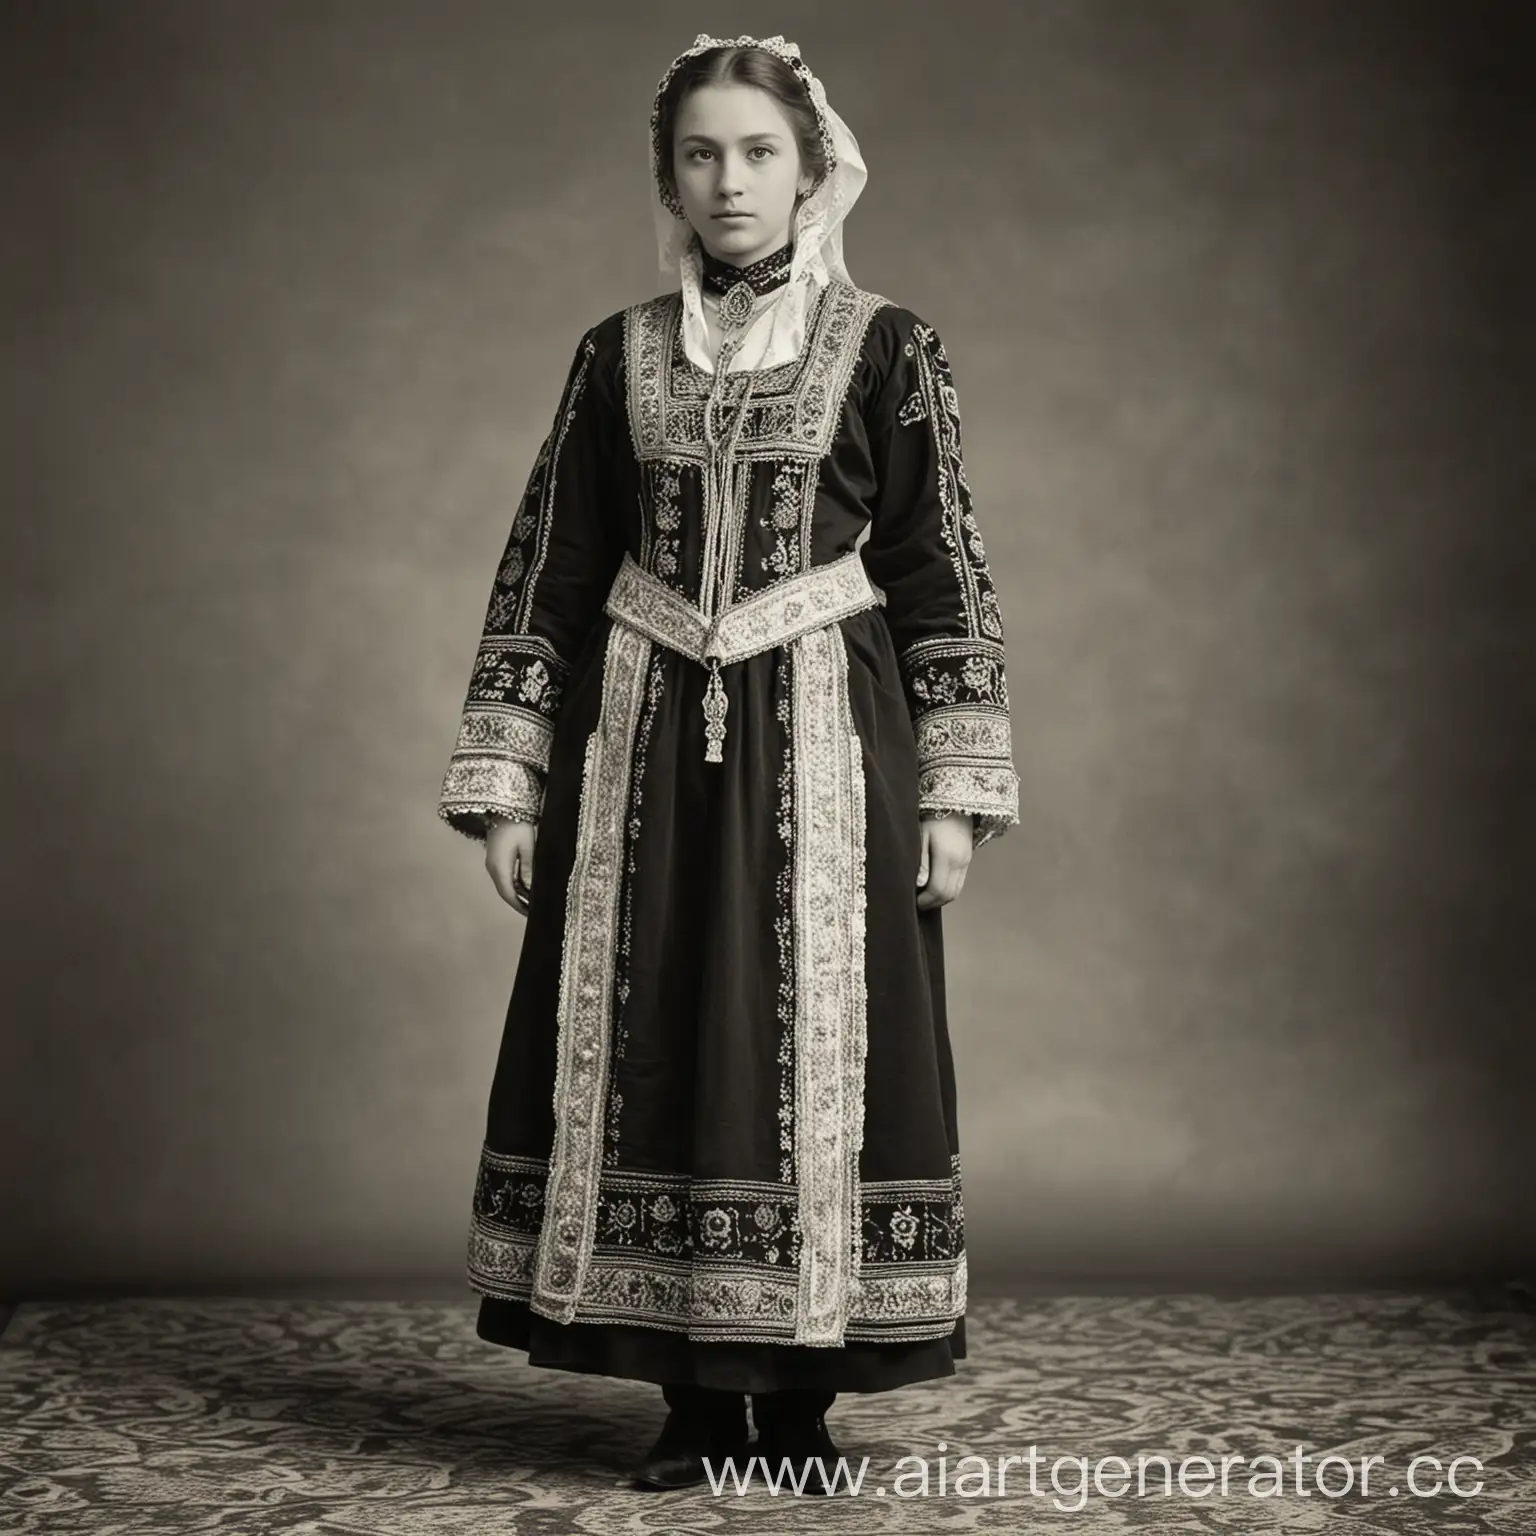 Vintage-Russian-Attire-Classic-Black-and-White-Portrait